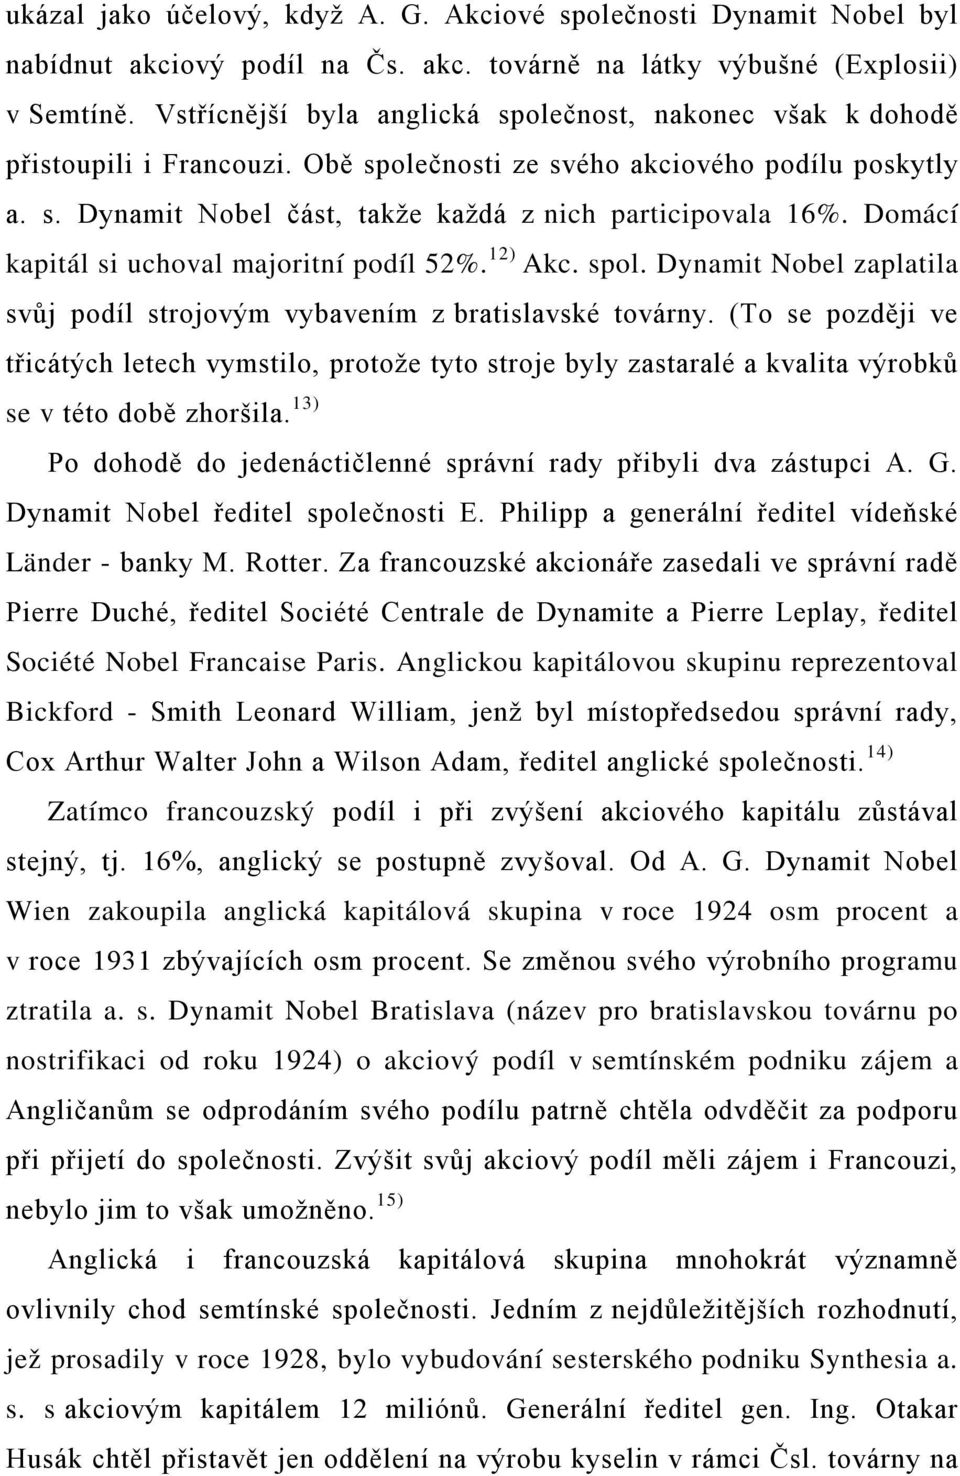 Domácí kapitál si uchoval majoritní podíl 52%. 12) Akc. spol. Dynamit Nobel zaplatila svůj podíl strojovým vybavením z bratislavské továrny.